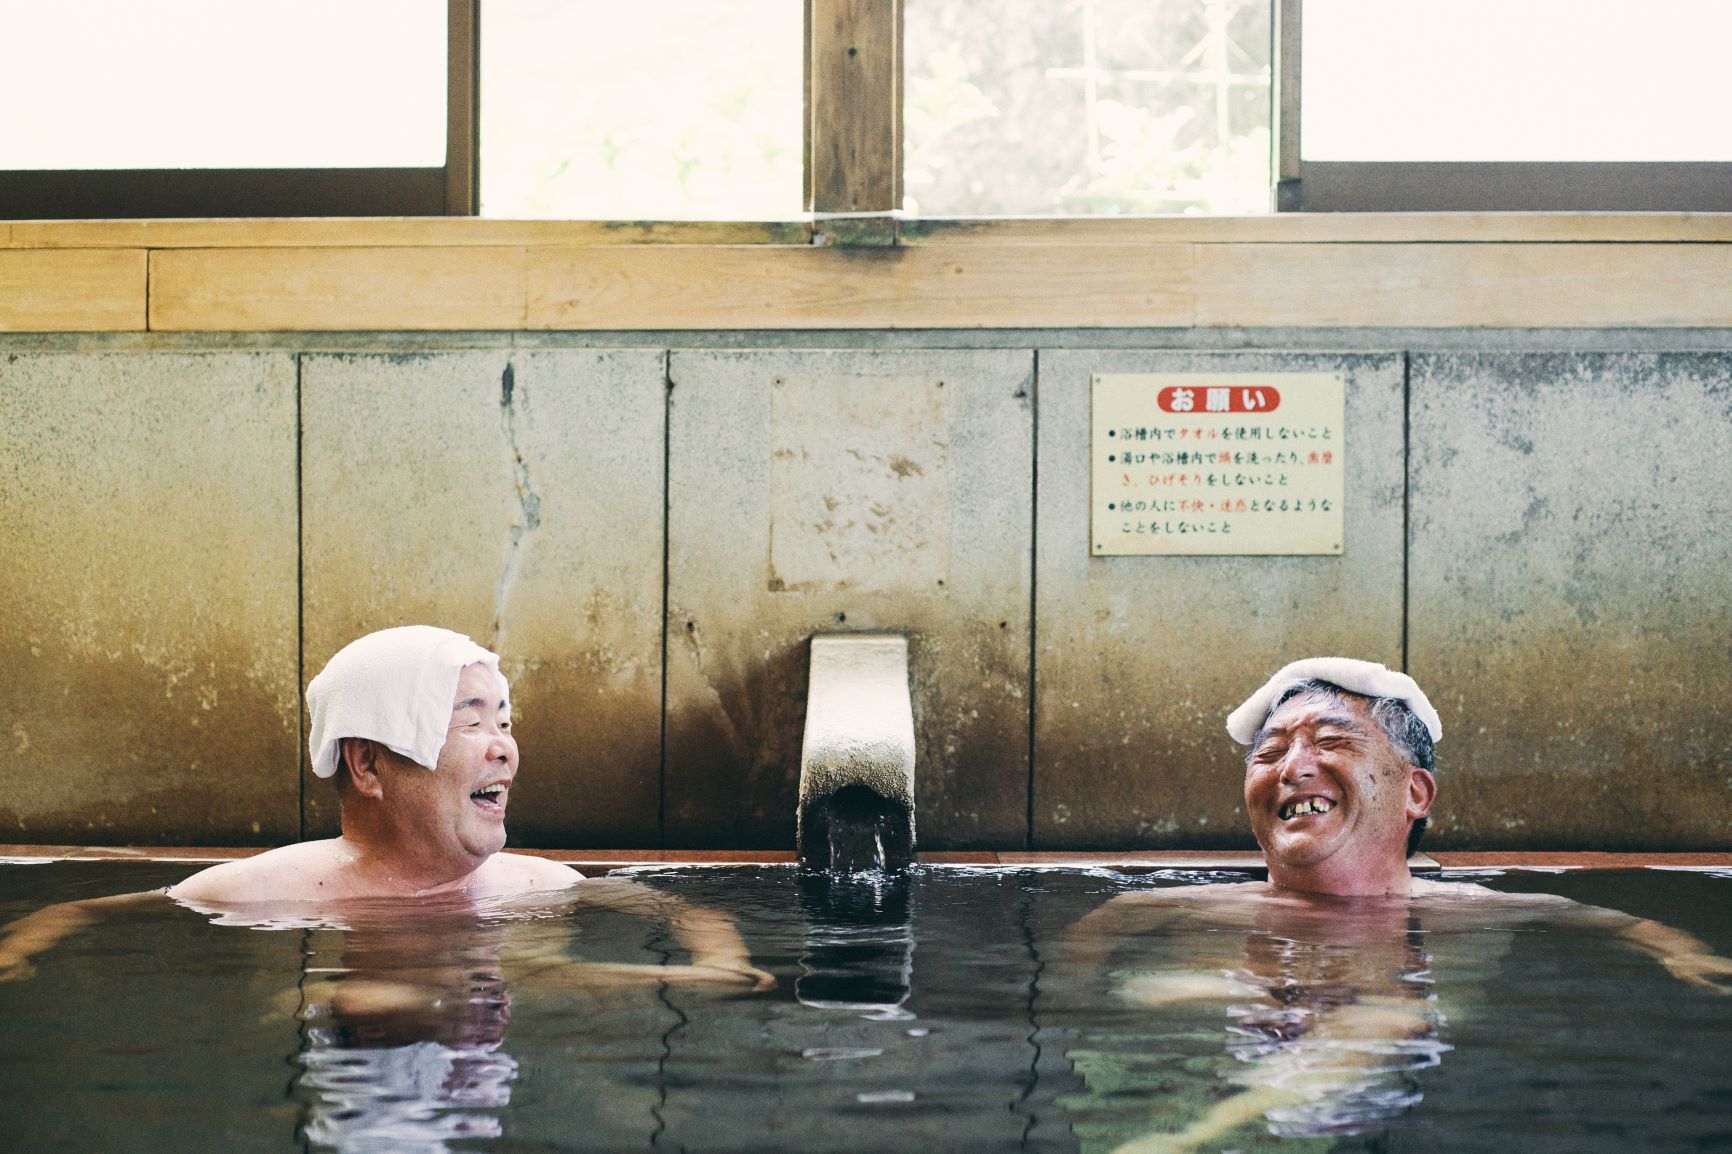 温泉でくつろぐ方の画像 Those who relax in hot springs